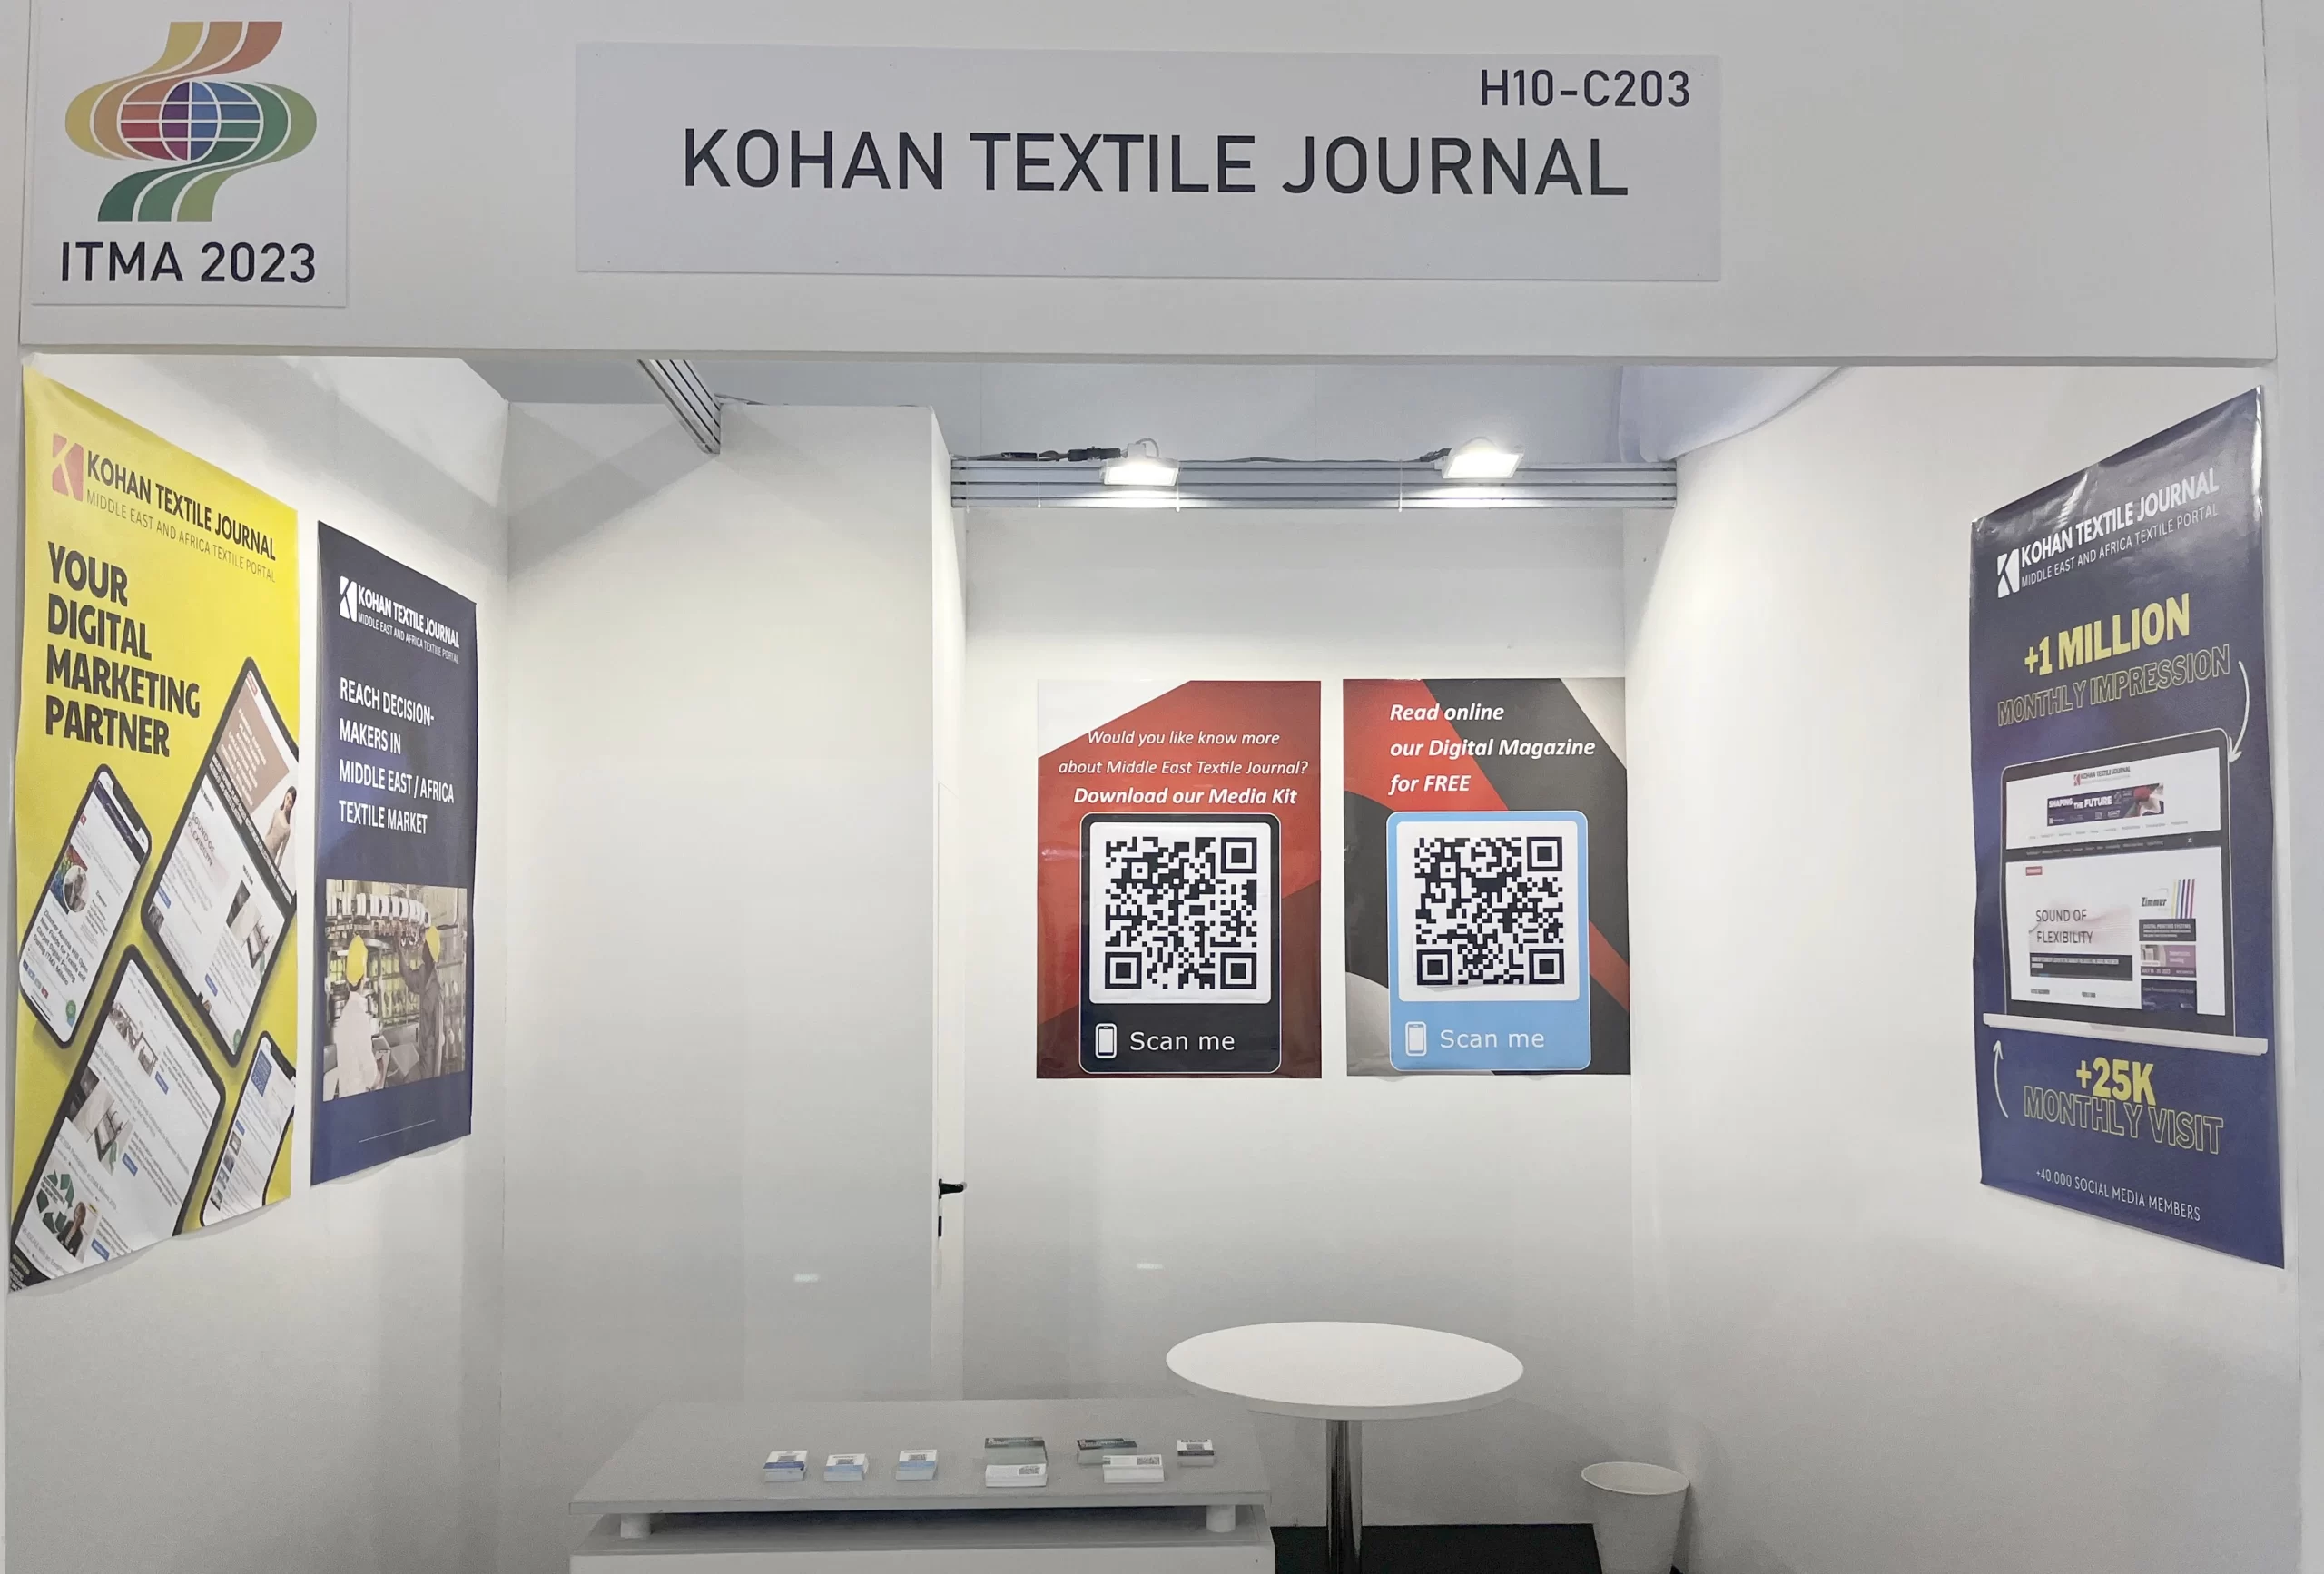 kohan textile journal booth at ITMA Milan 2023